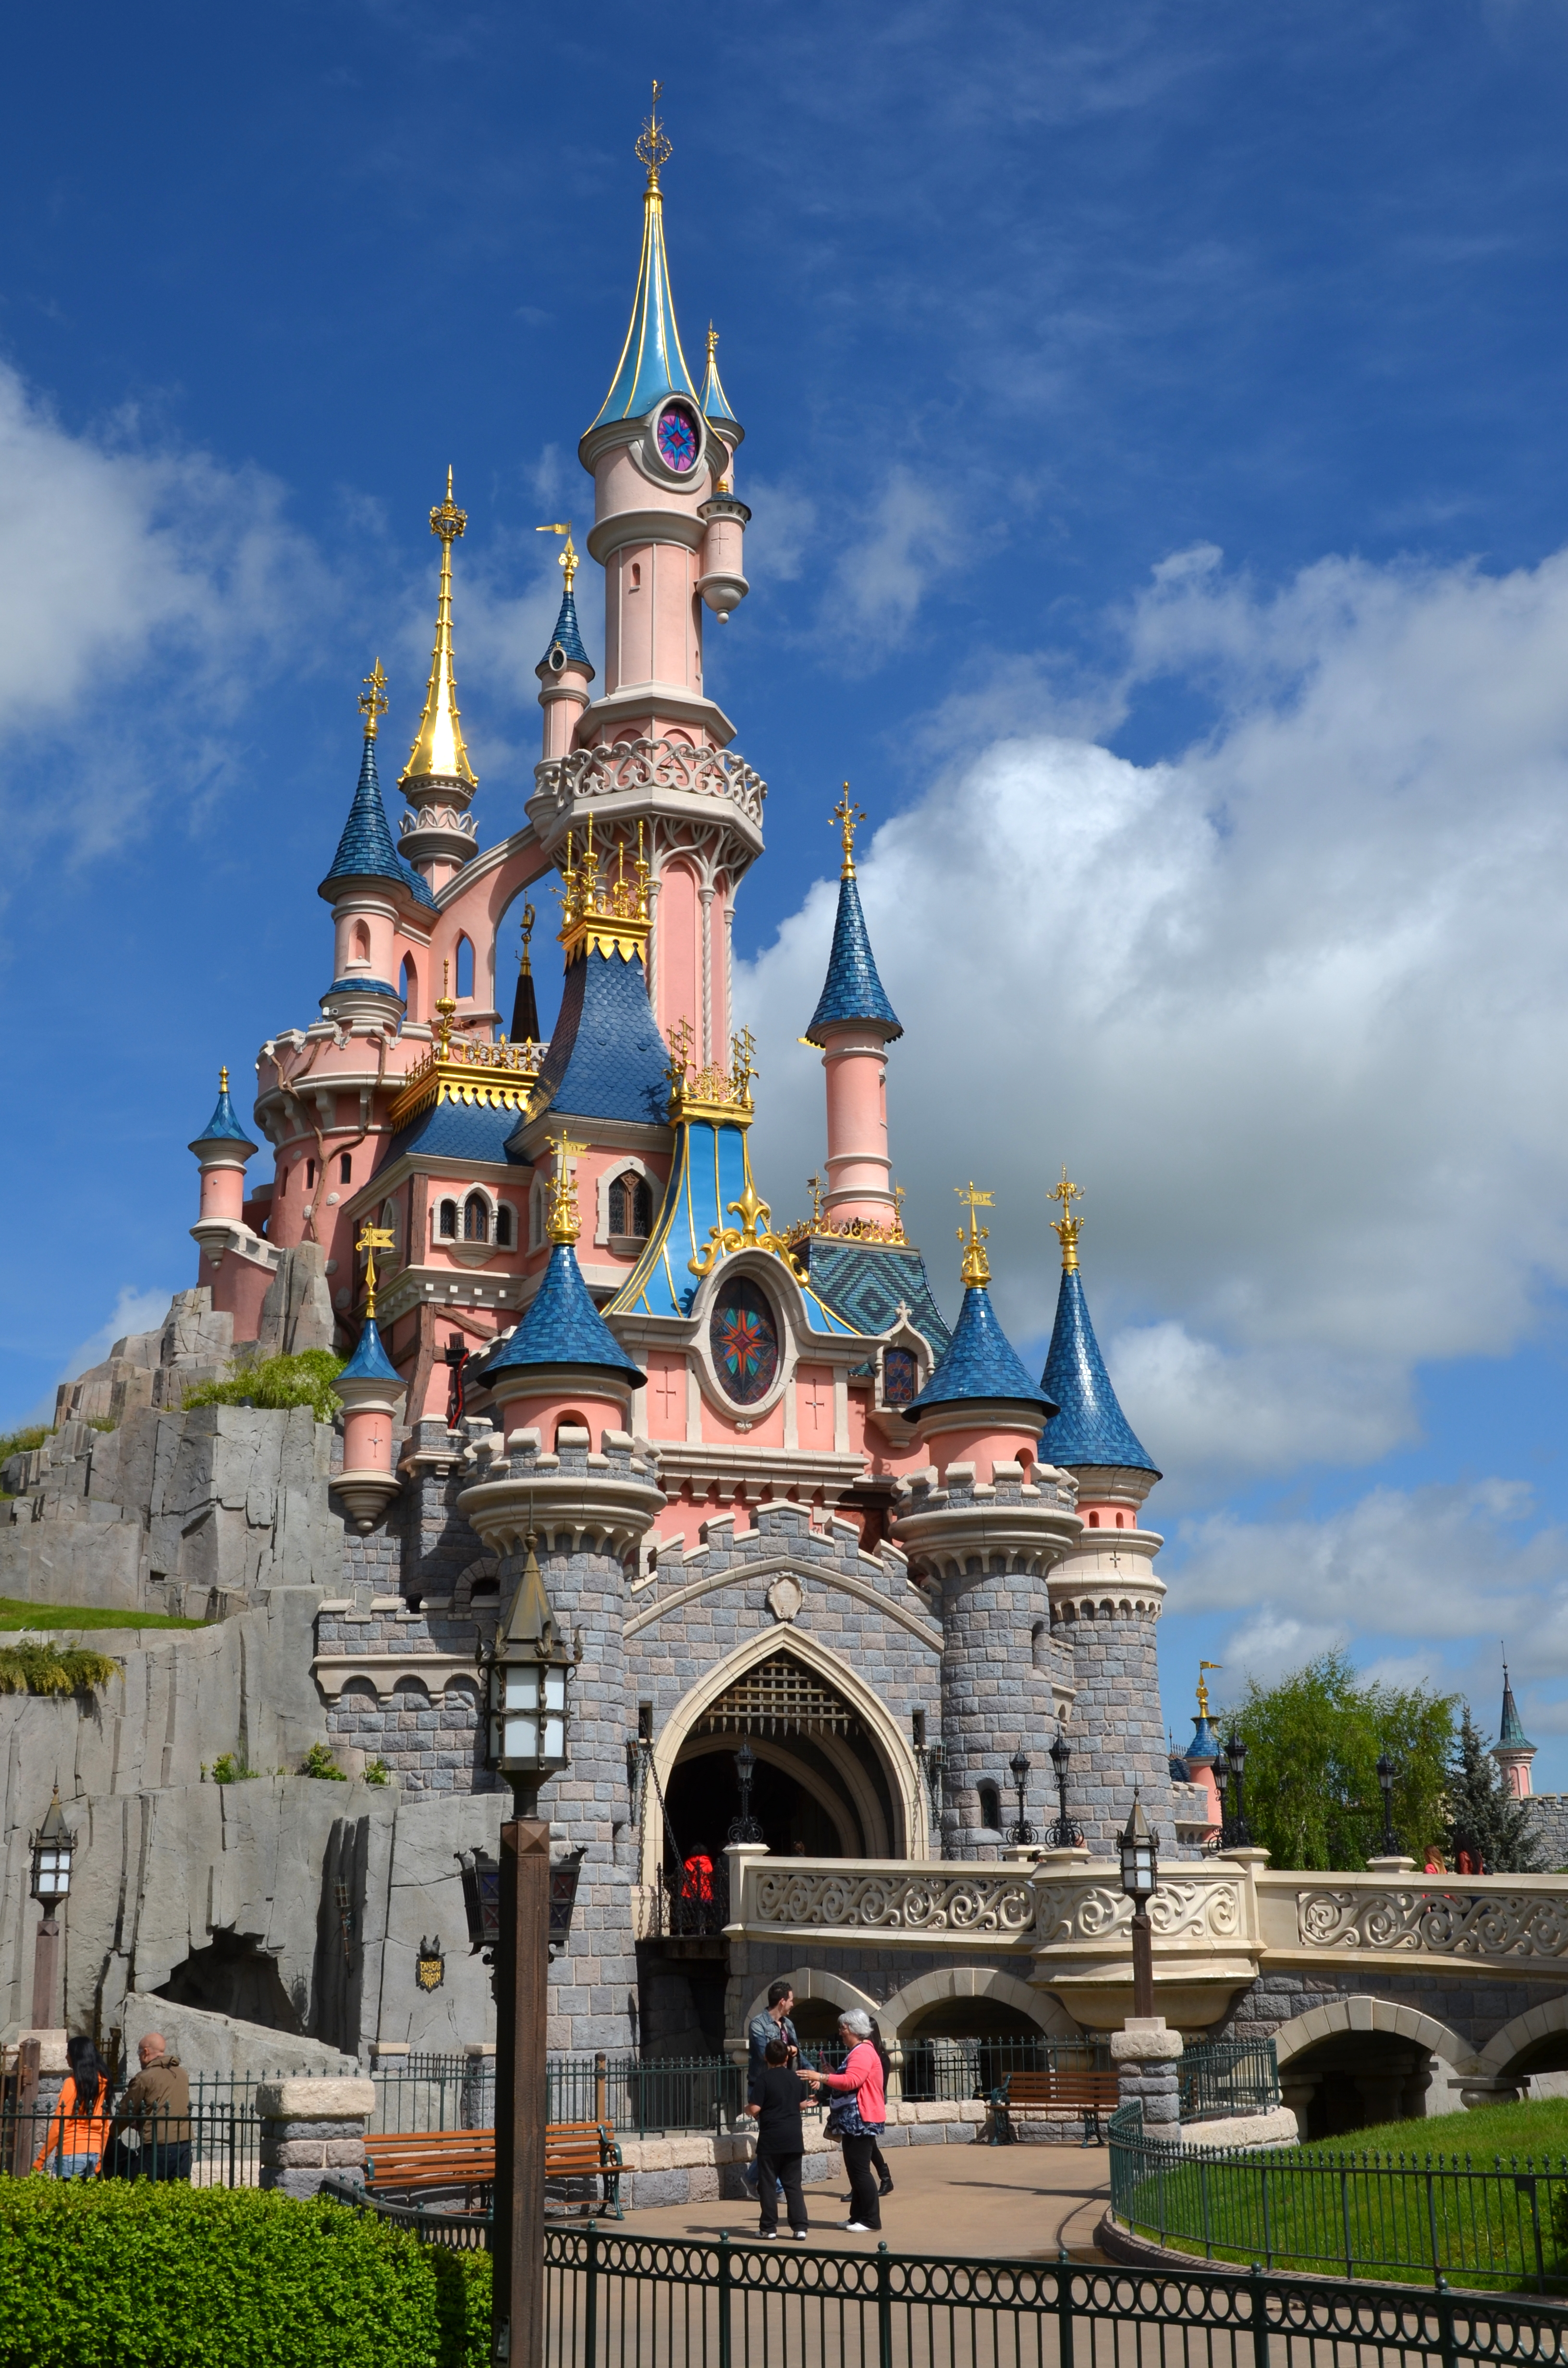 Диснейленд расположен. Парк Диснейленд. Где находится Disneyland в Америке. Парк Диснейленд в Америке. Сказочный замок в Диснейленде во Франции.